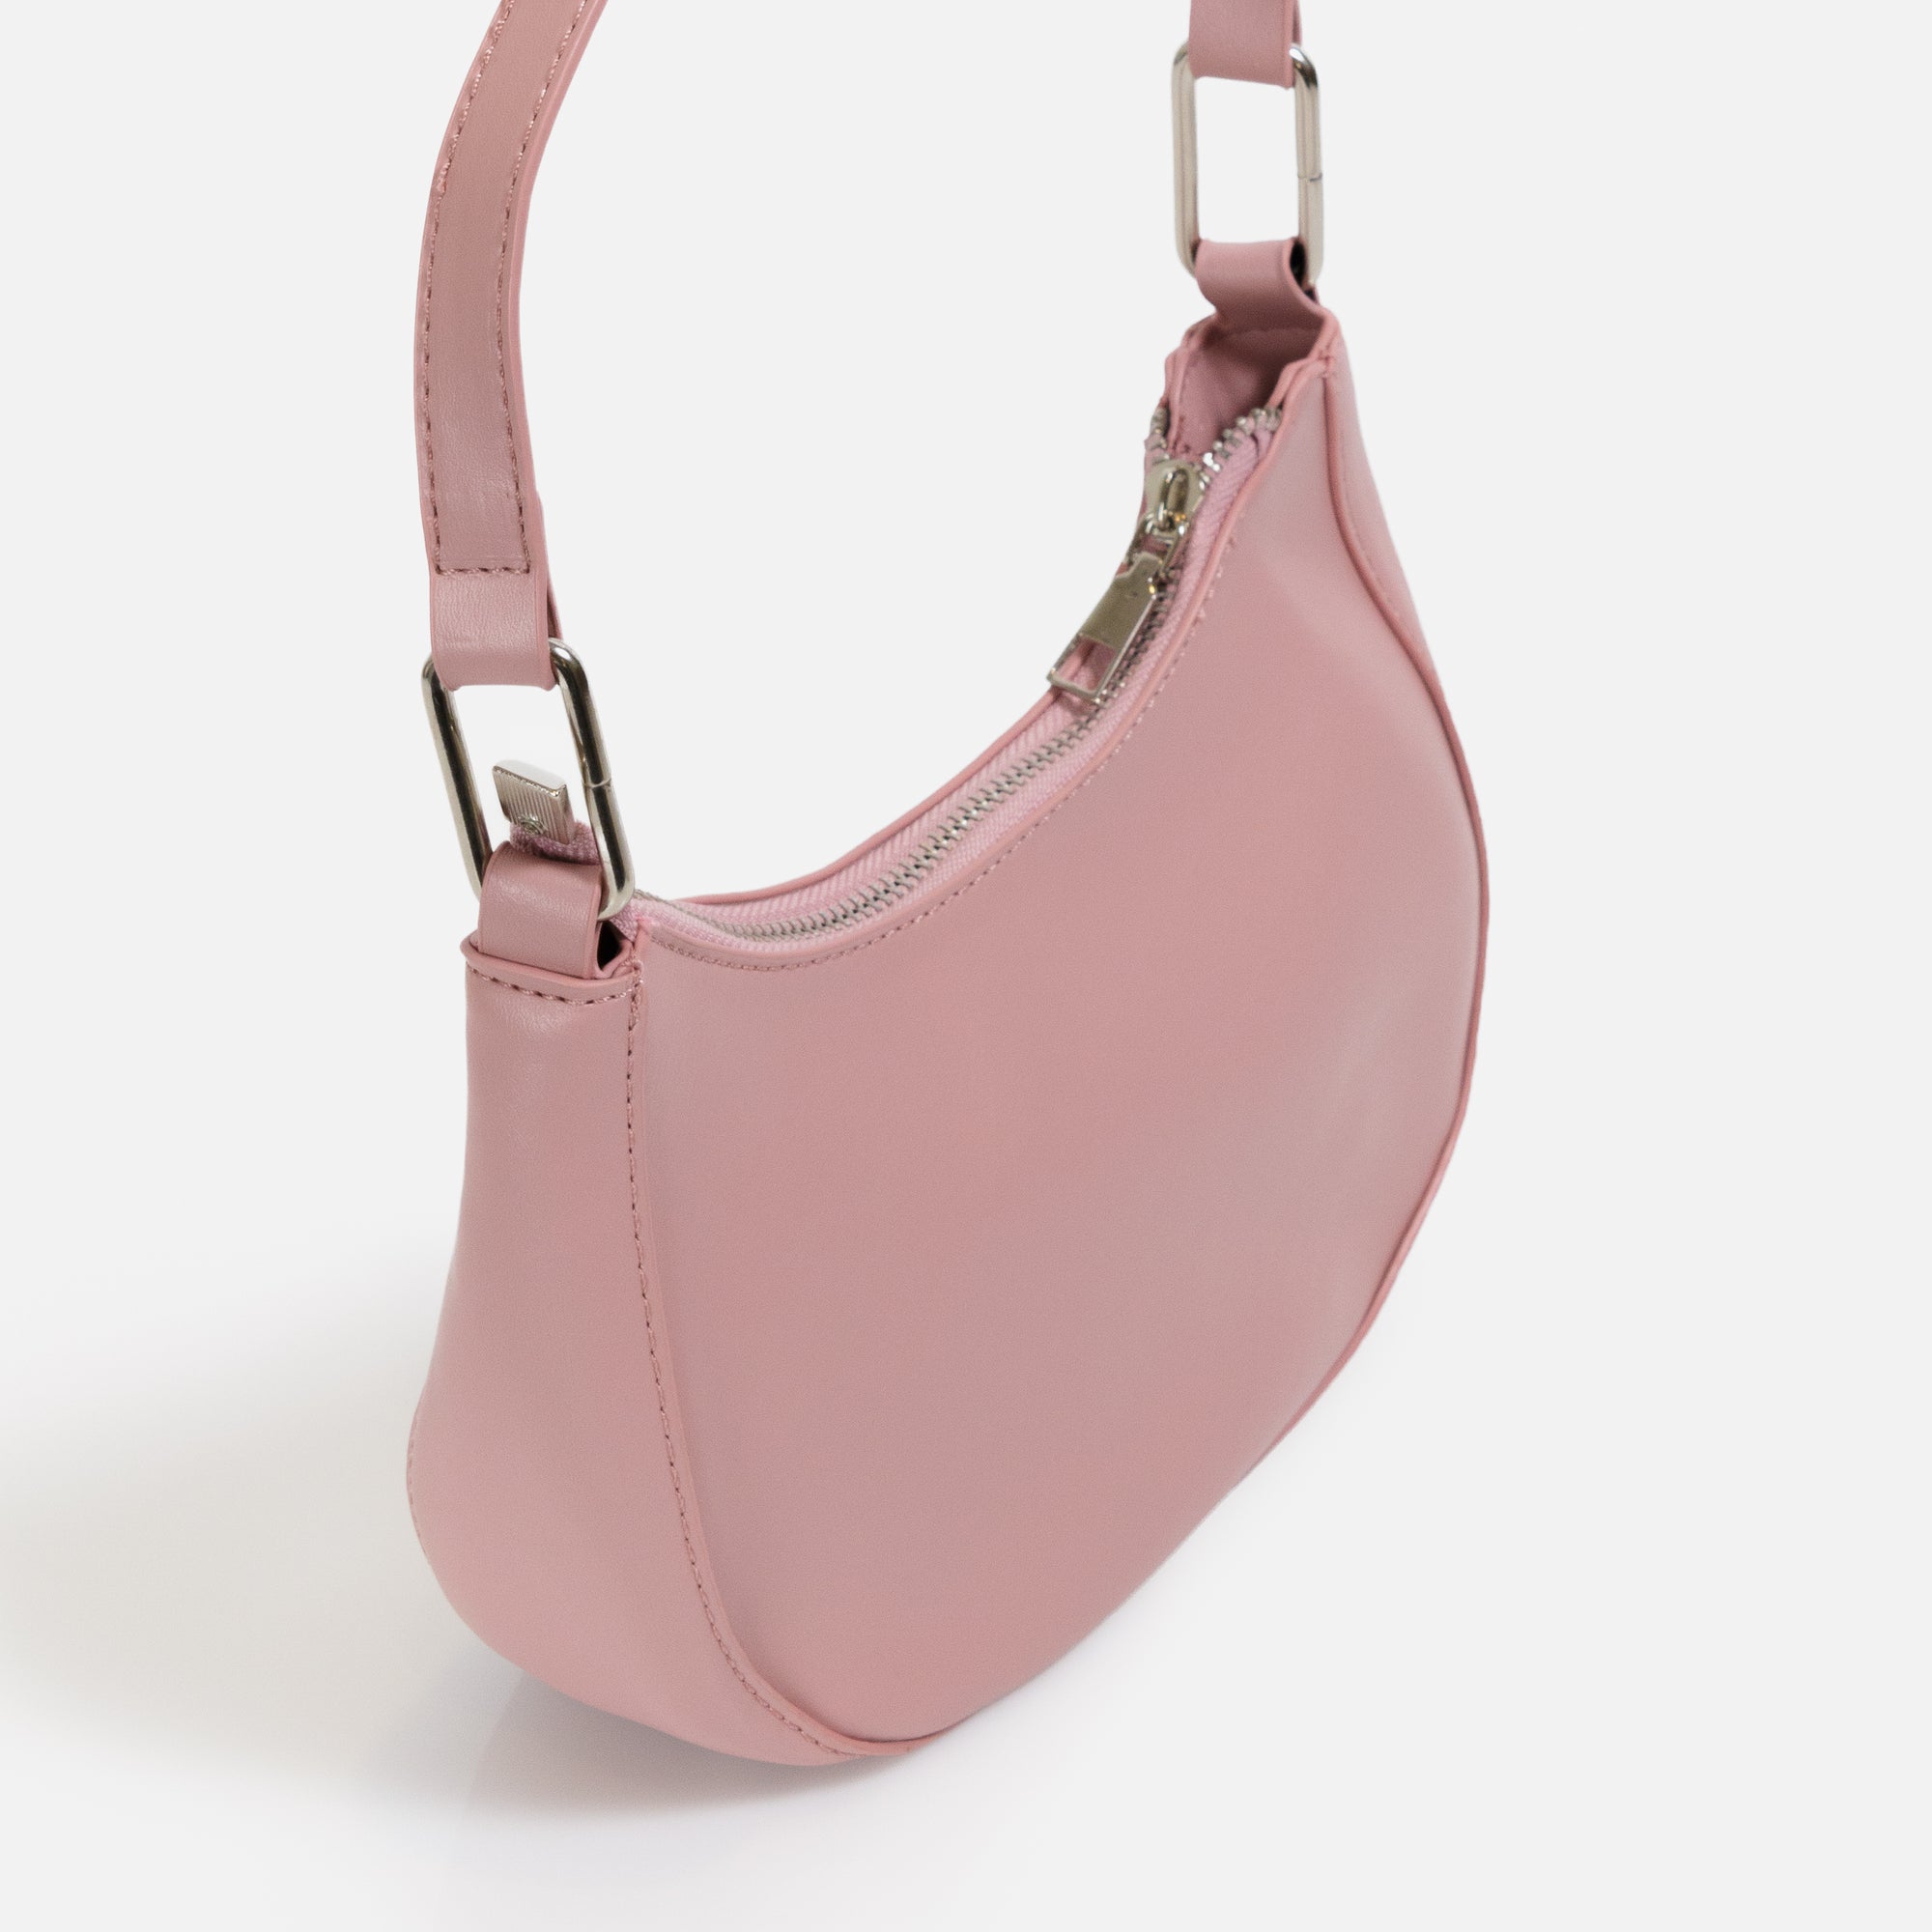 Old pink shoulder handbag